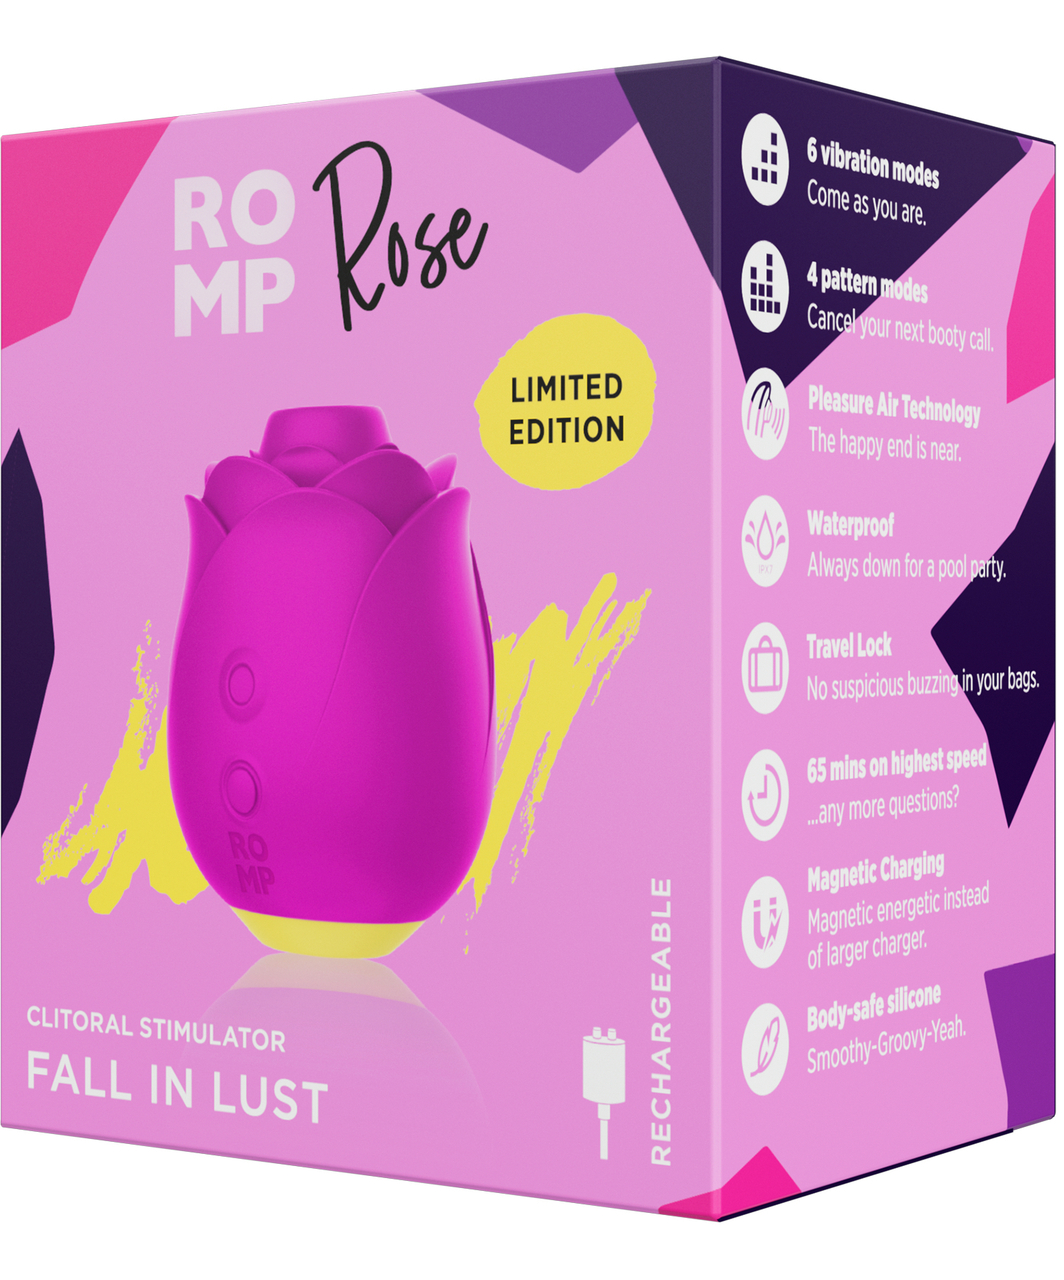 Romp Rose clitoral stimulator